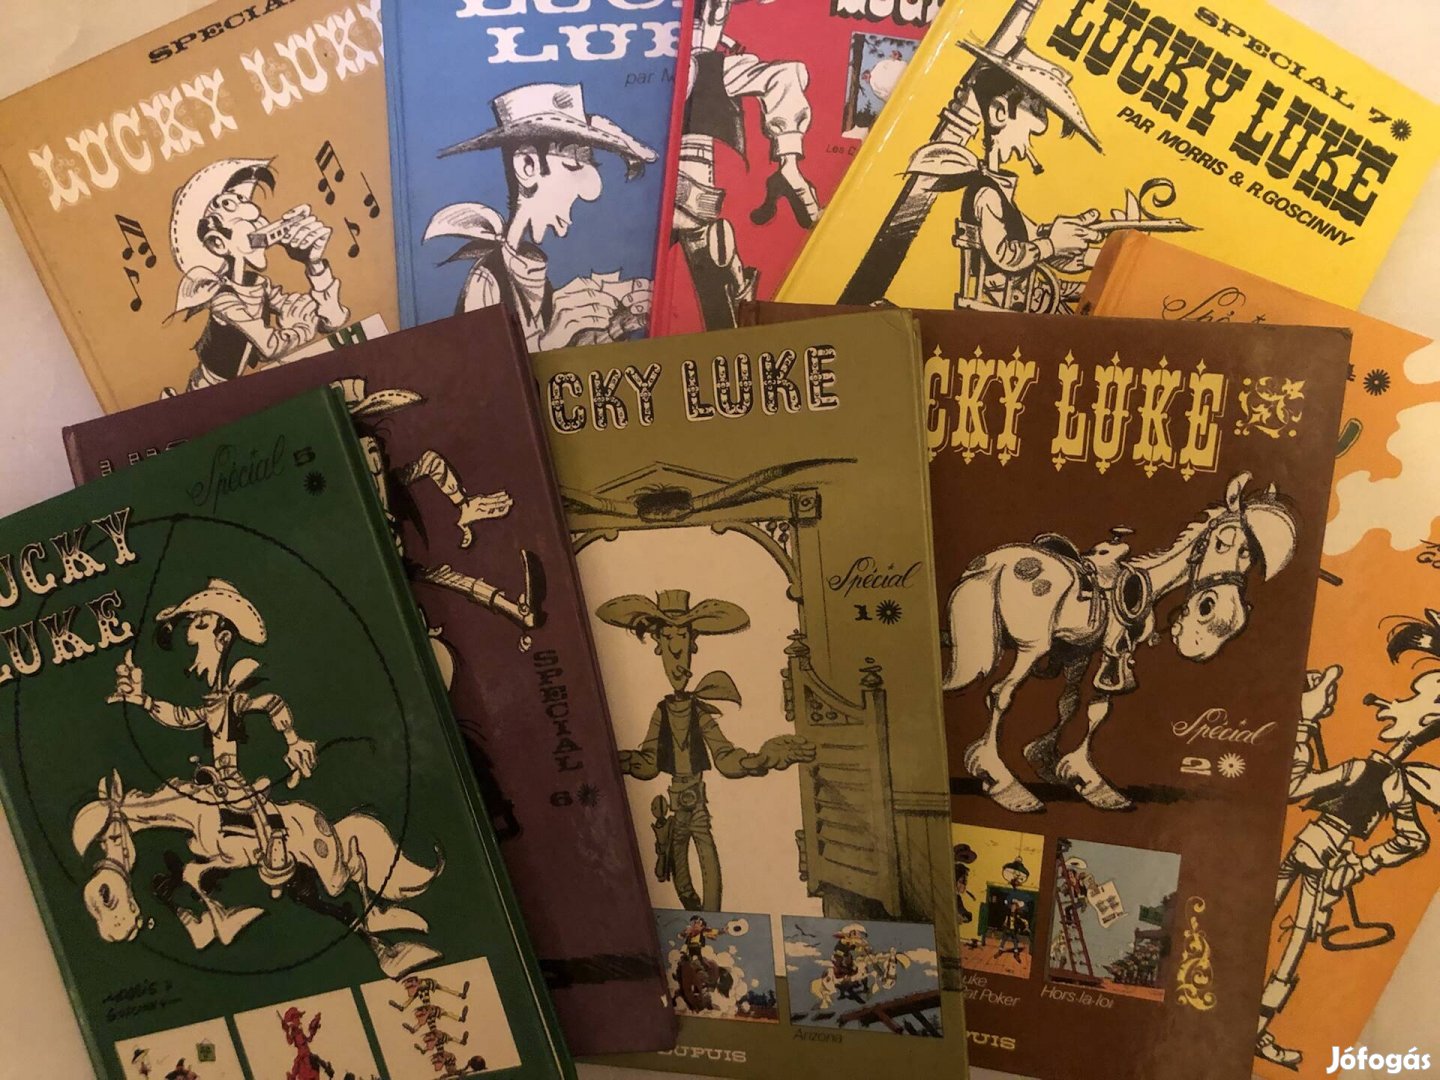 Lucky Luke / képregény / retro / könyv / gyűjtői ritkaság